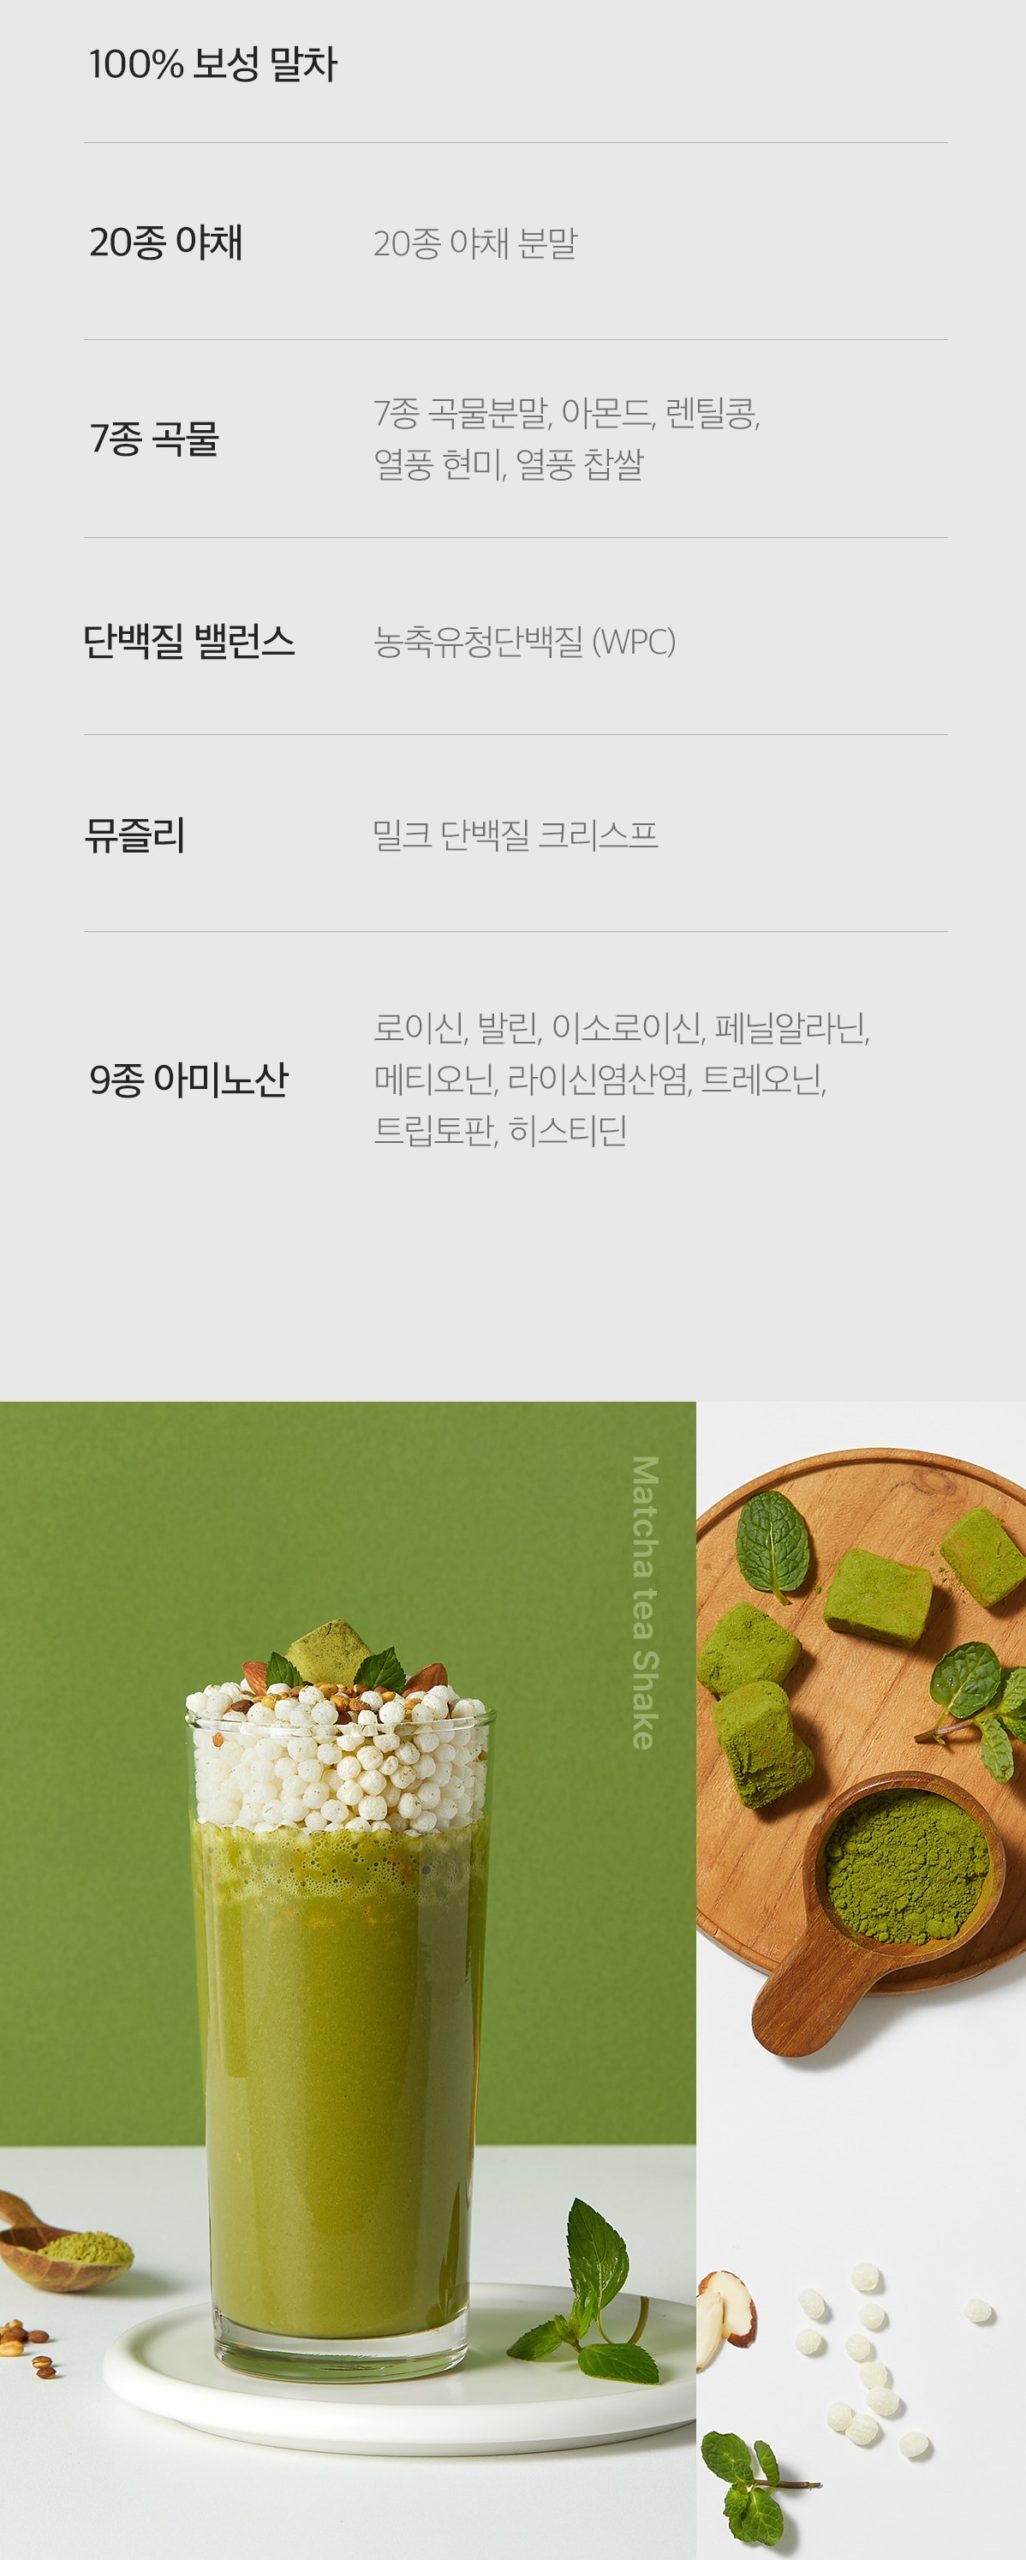 韓國食品-[Glamd] Shake (Green Tea) 40g